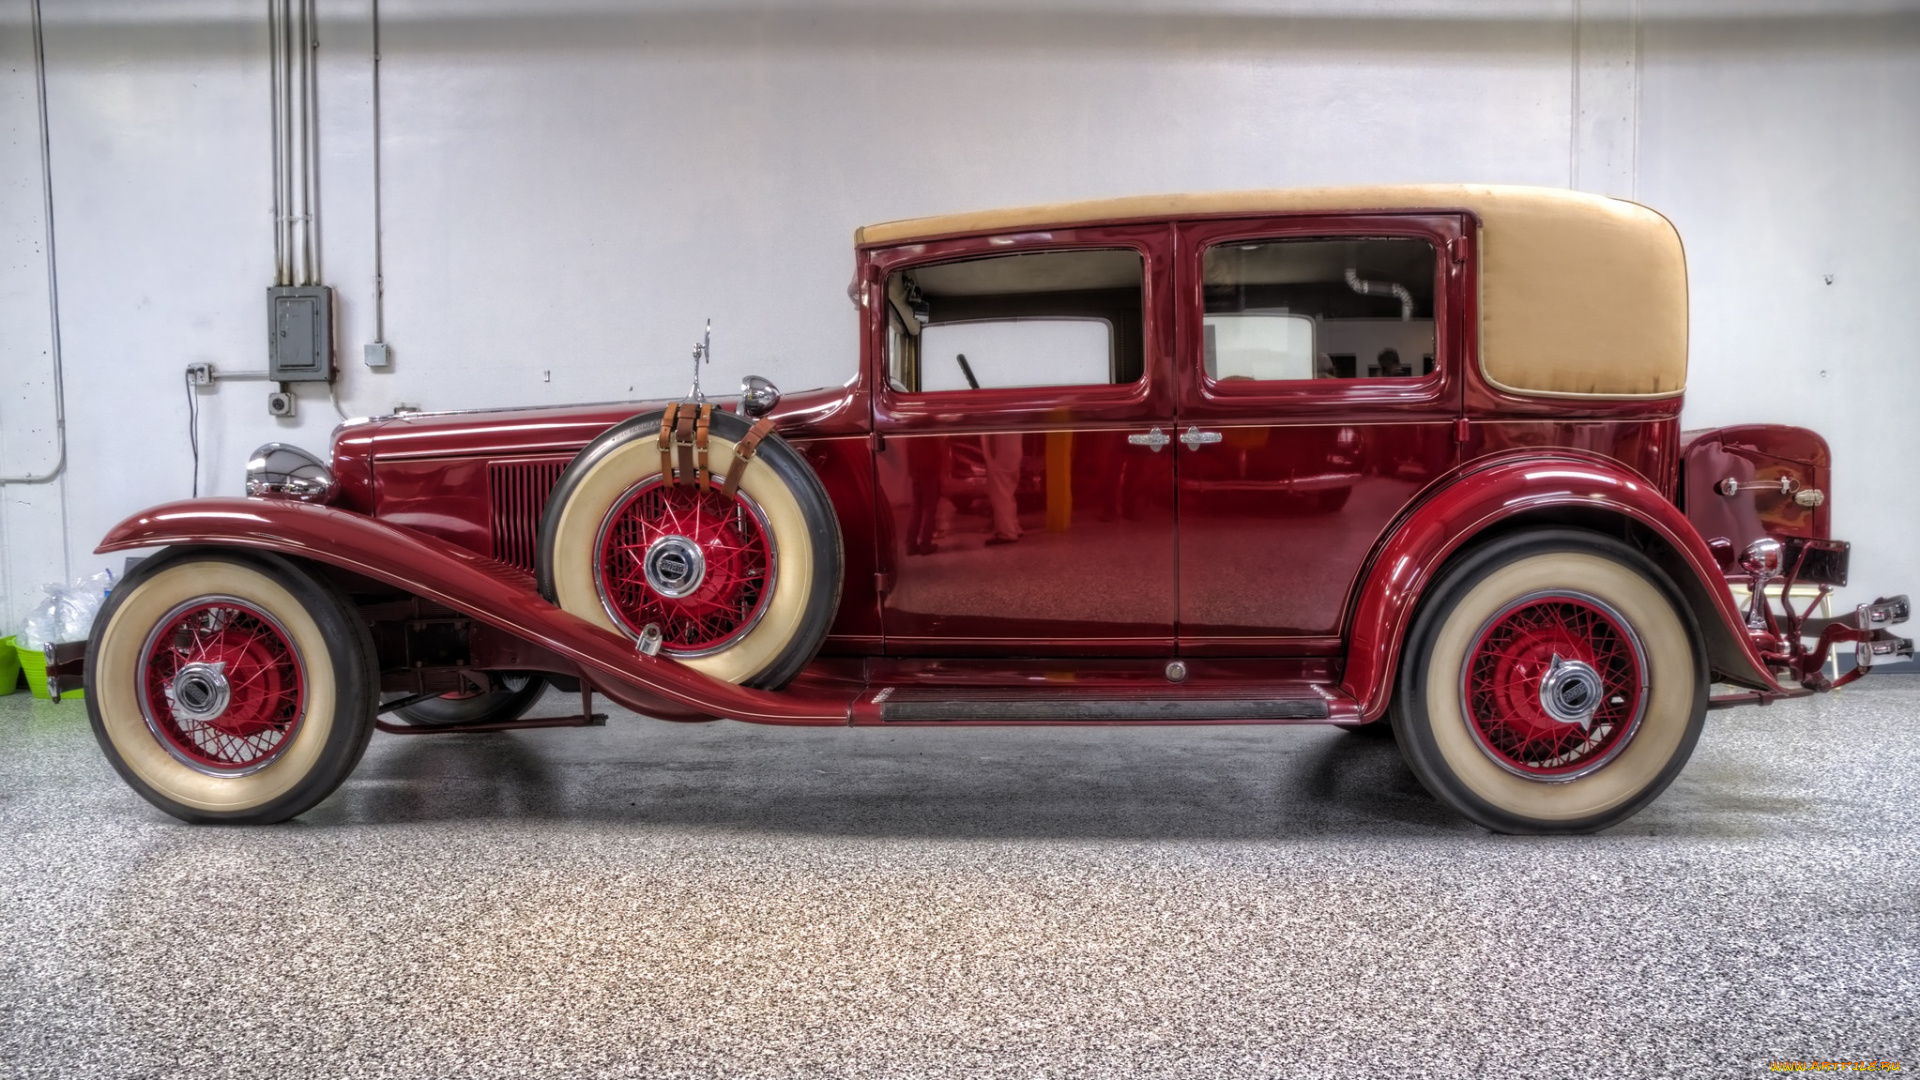 1929, cord, l29, brougham, автомобили, выставки, и, уличные, фото, автошоу, выставка